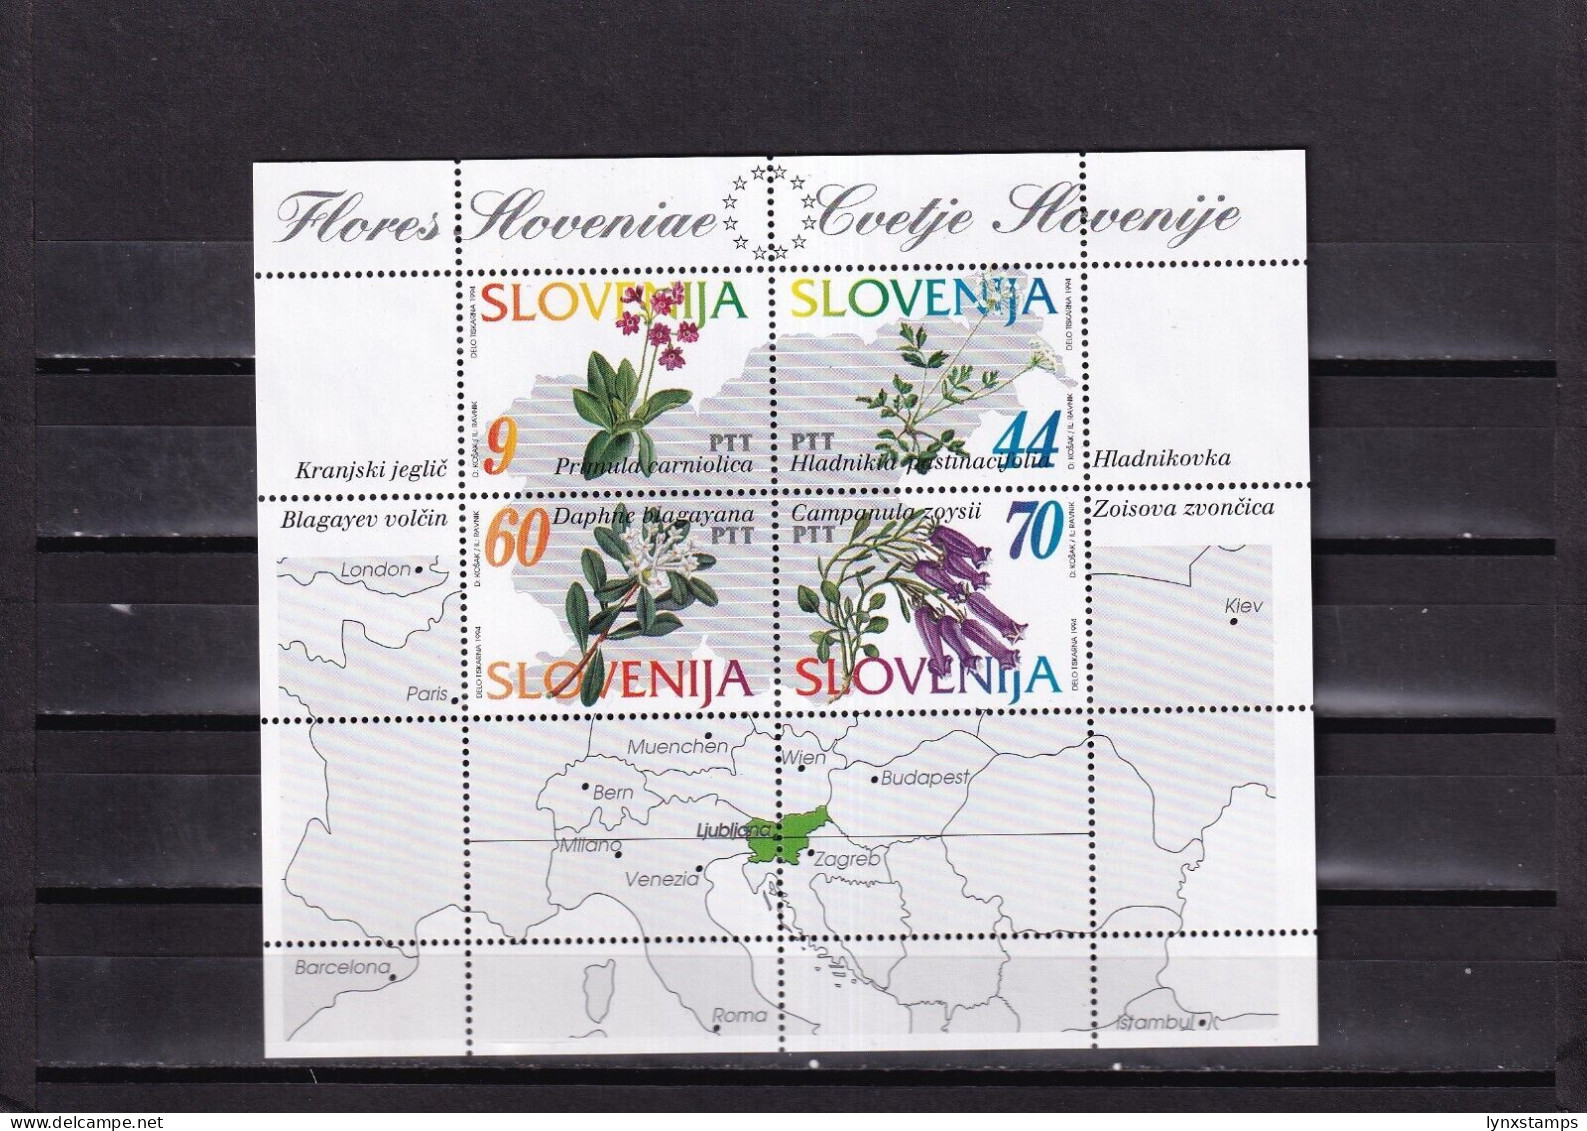 ER04 Slovenia 1994 Flowers Of Slovenia MNH Souvenir Sheet - Slovenia